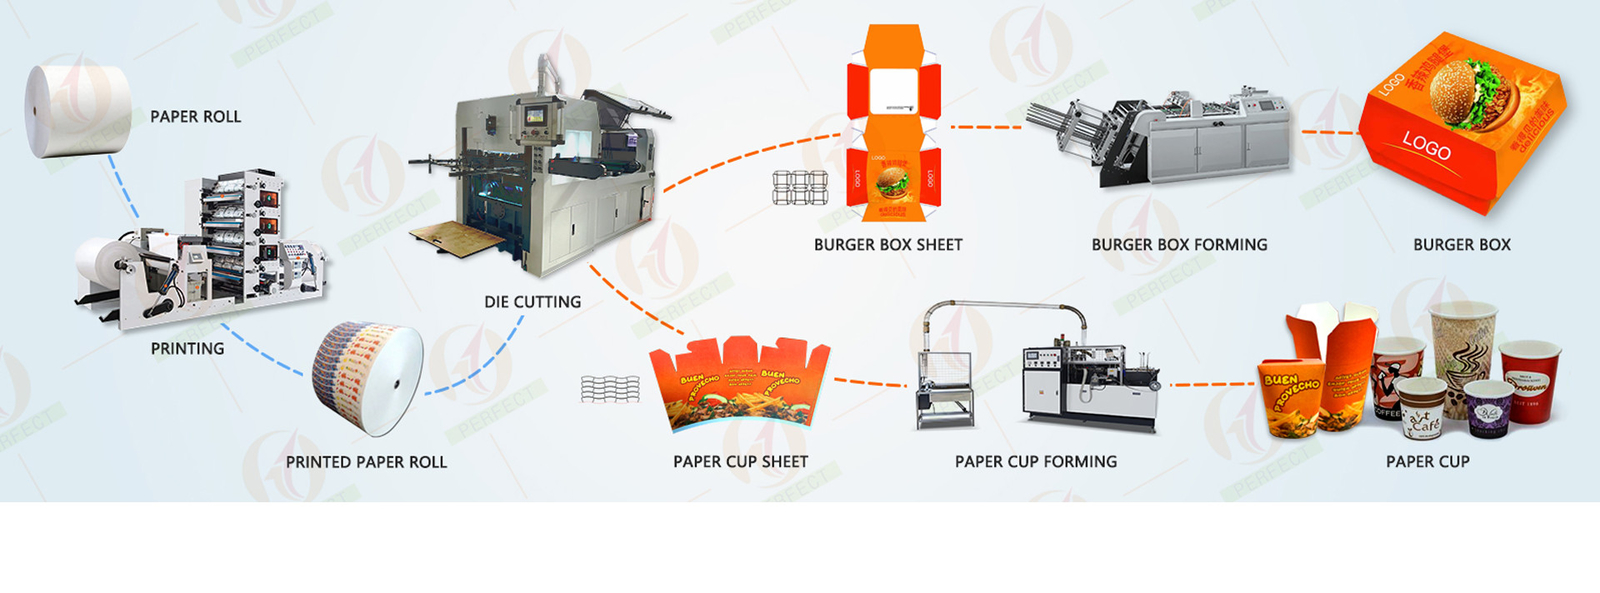 गुणवत्ता पेपर कप बनाने की मशीनें फैक्टरी